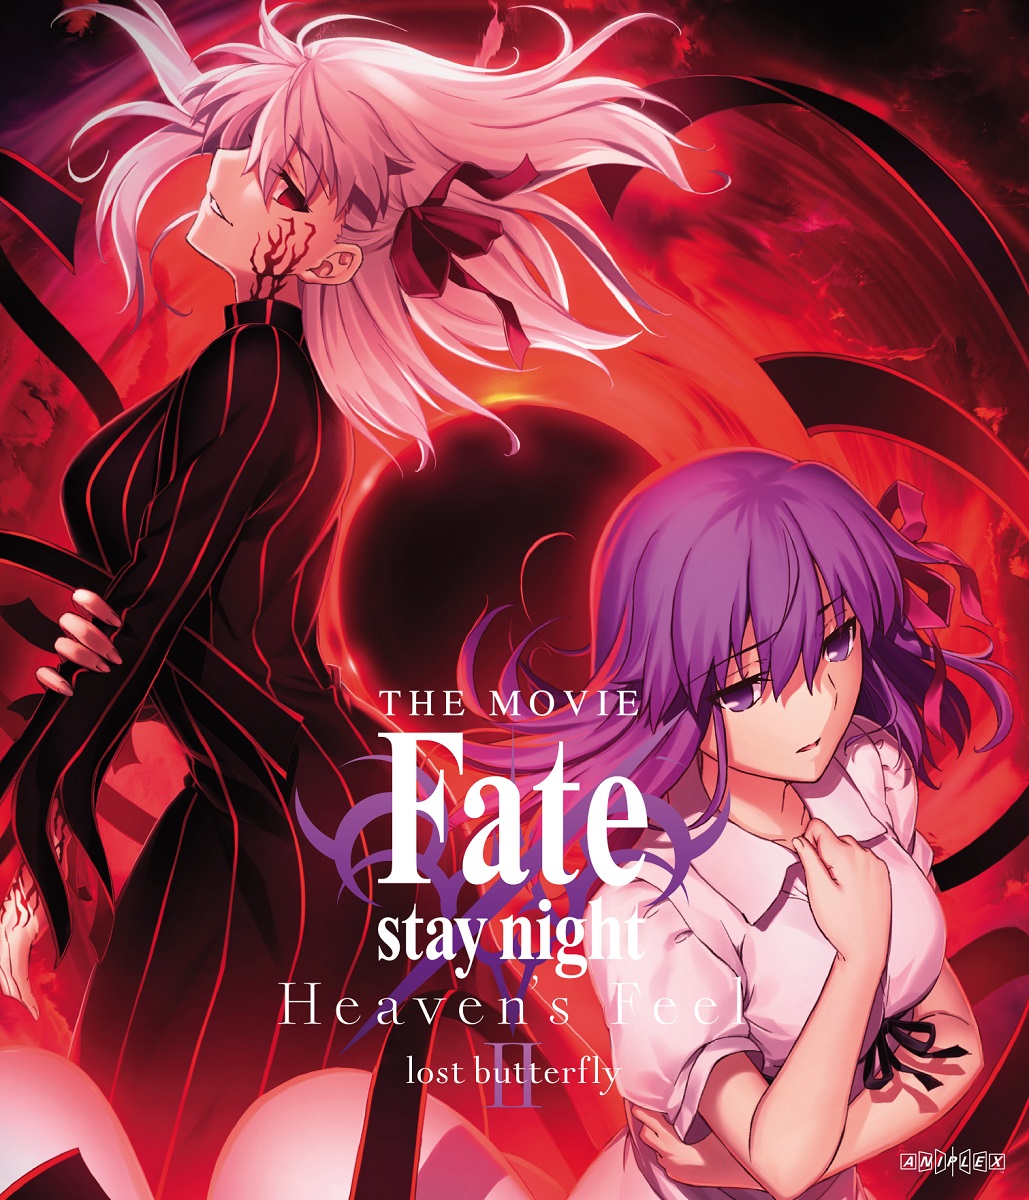 Fate stay/night Heaven's FeelⅡ lost butterfly battle part 4K HDR 